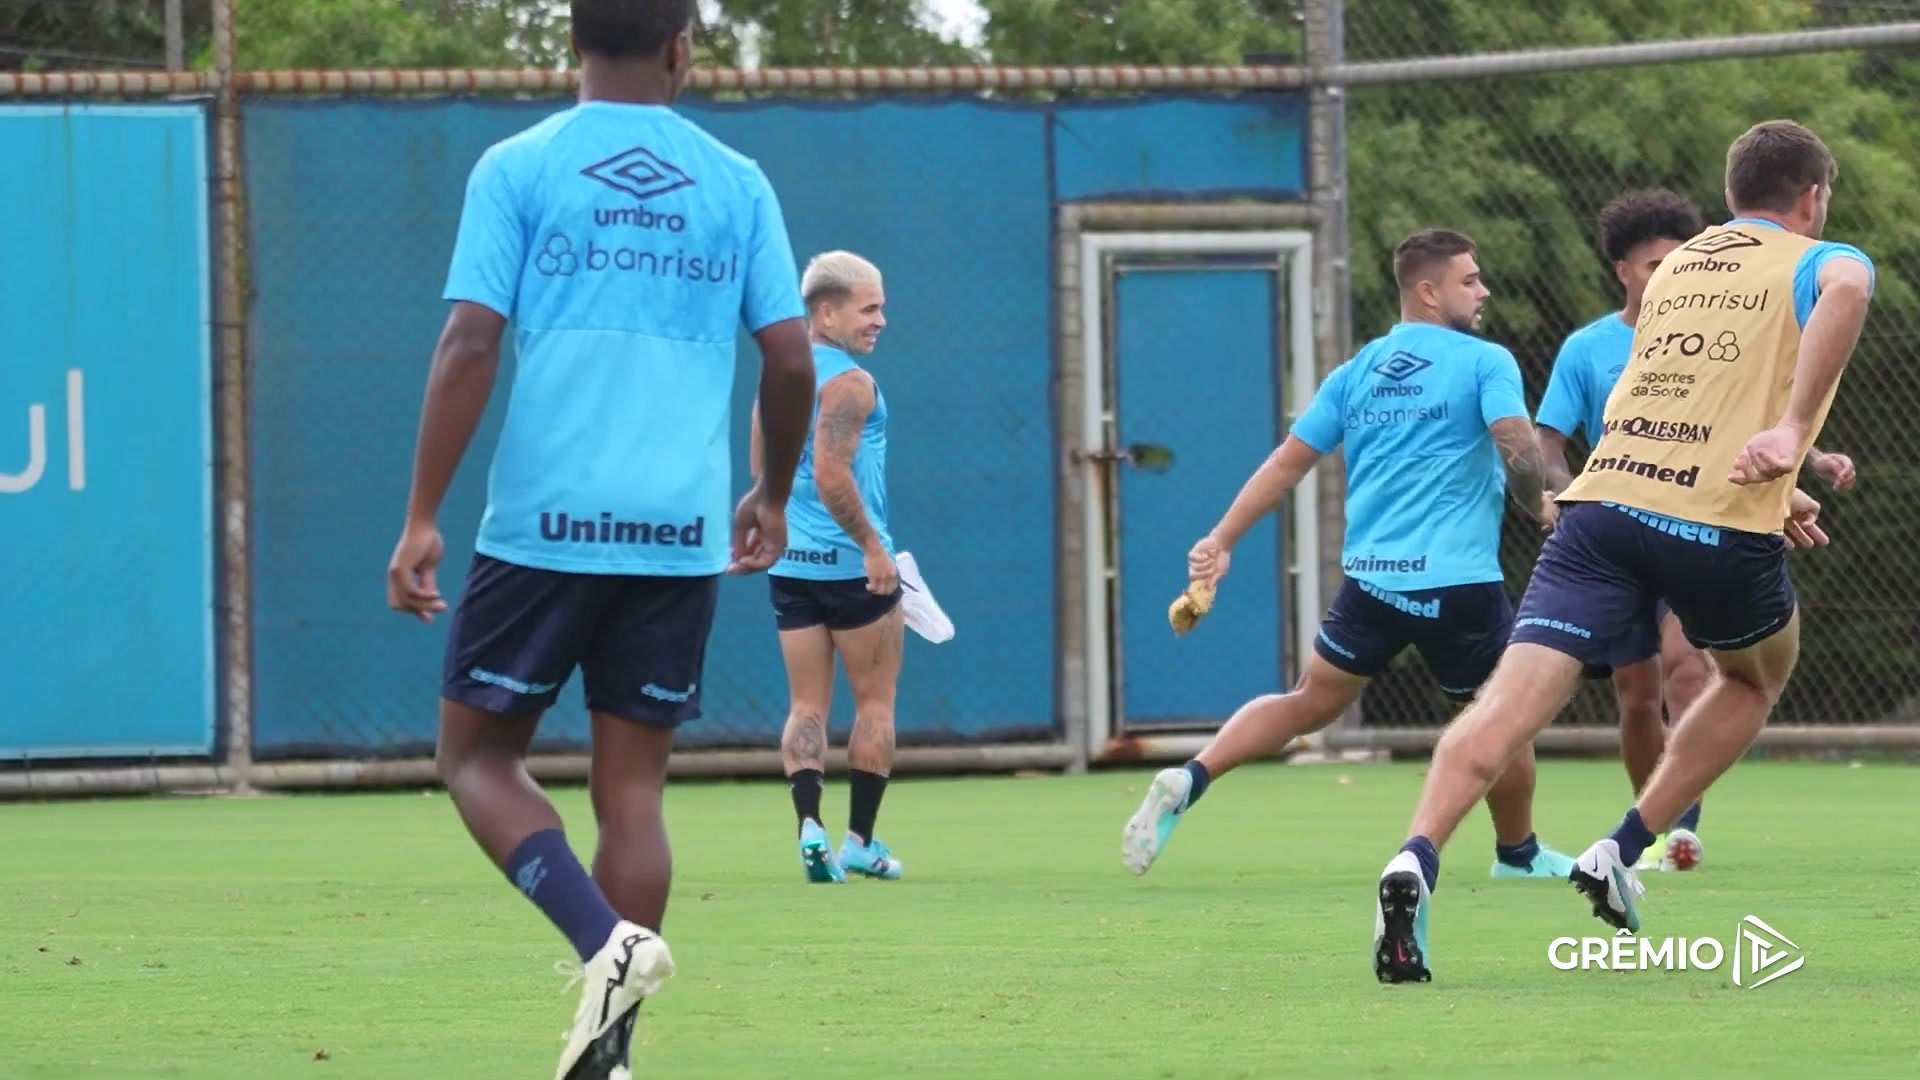 Soteldo comemora retorno aos treinos no Grêmio após lesão